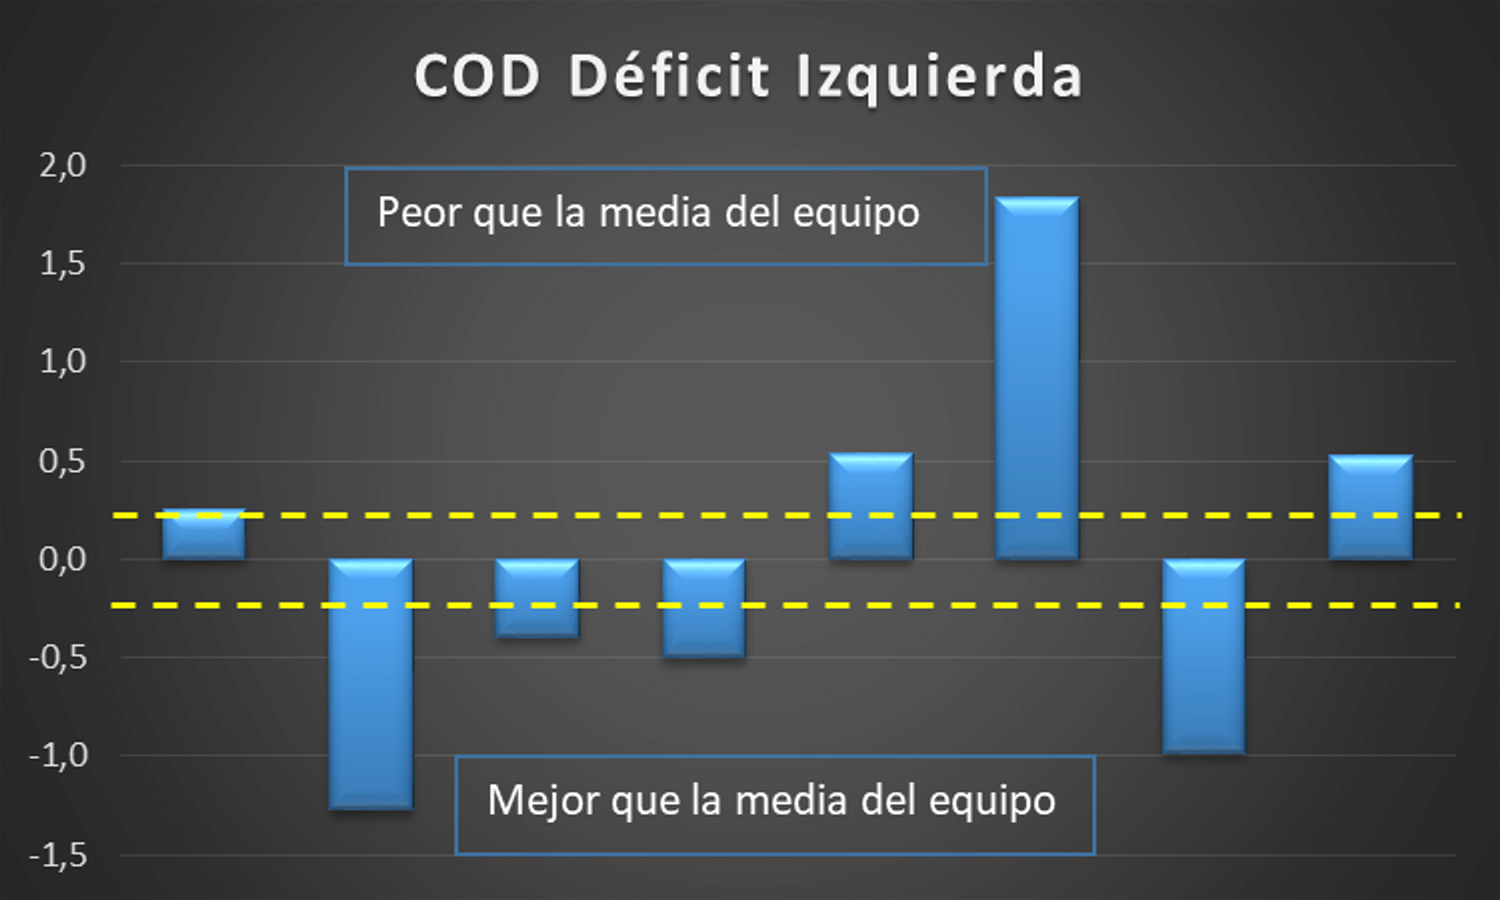 Figura 5. Diferentes jugadores y su rendimiento en relación a la del equipo, tras calcular el COD Déficit. Elaboración propia.